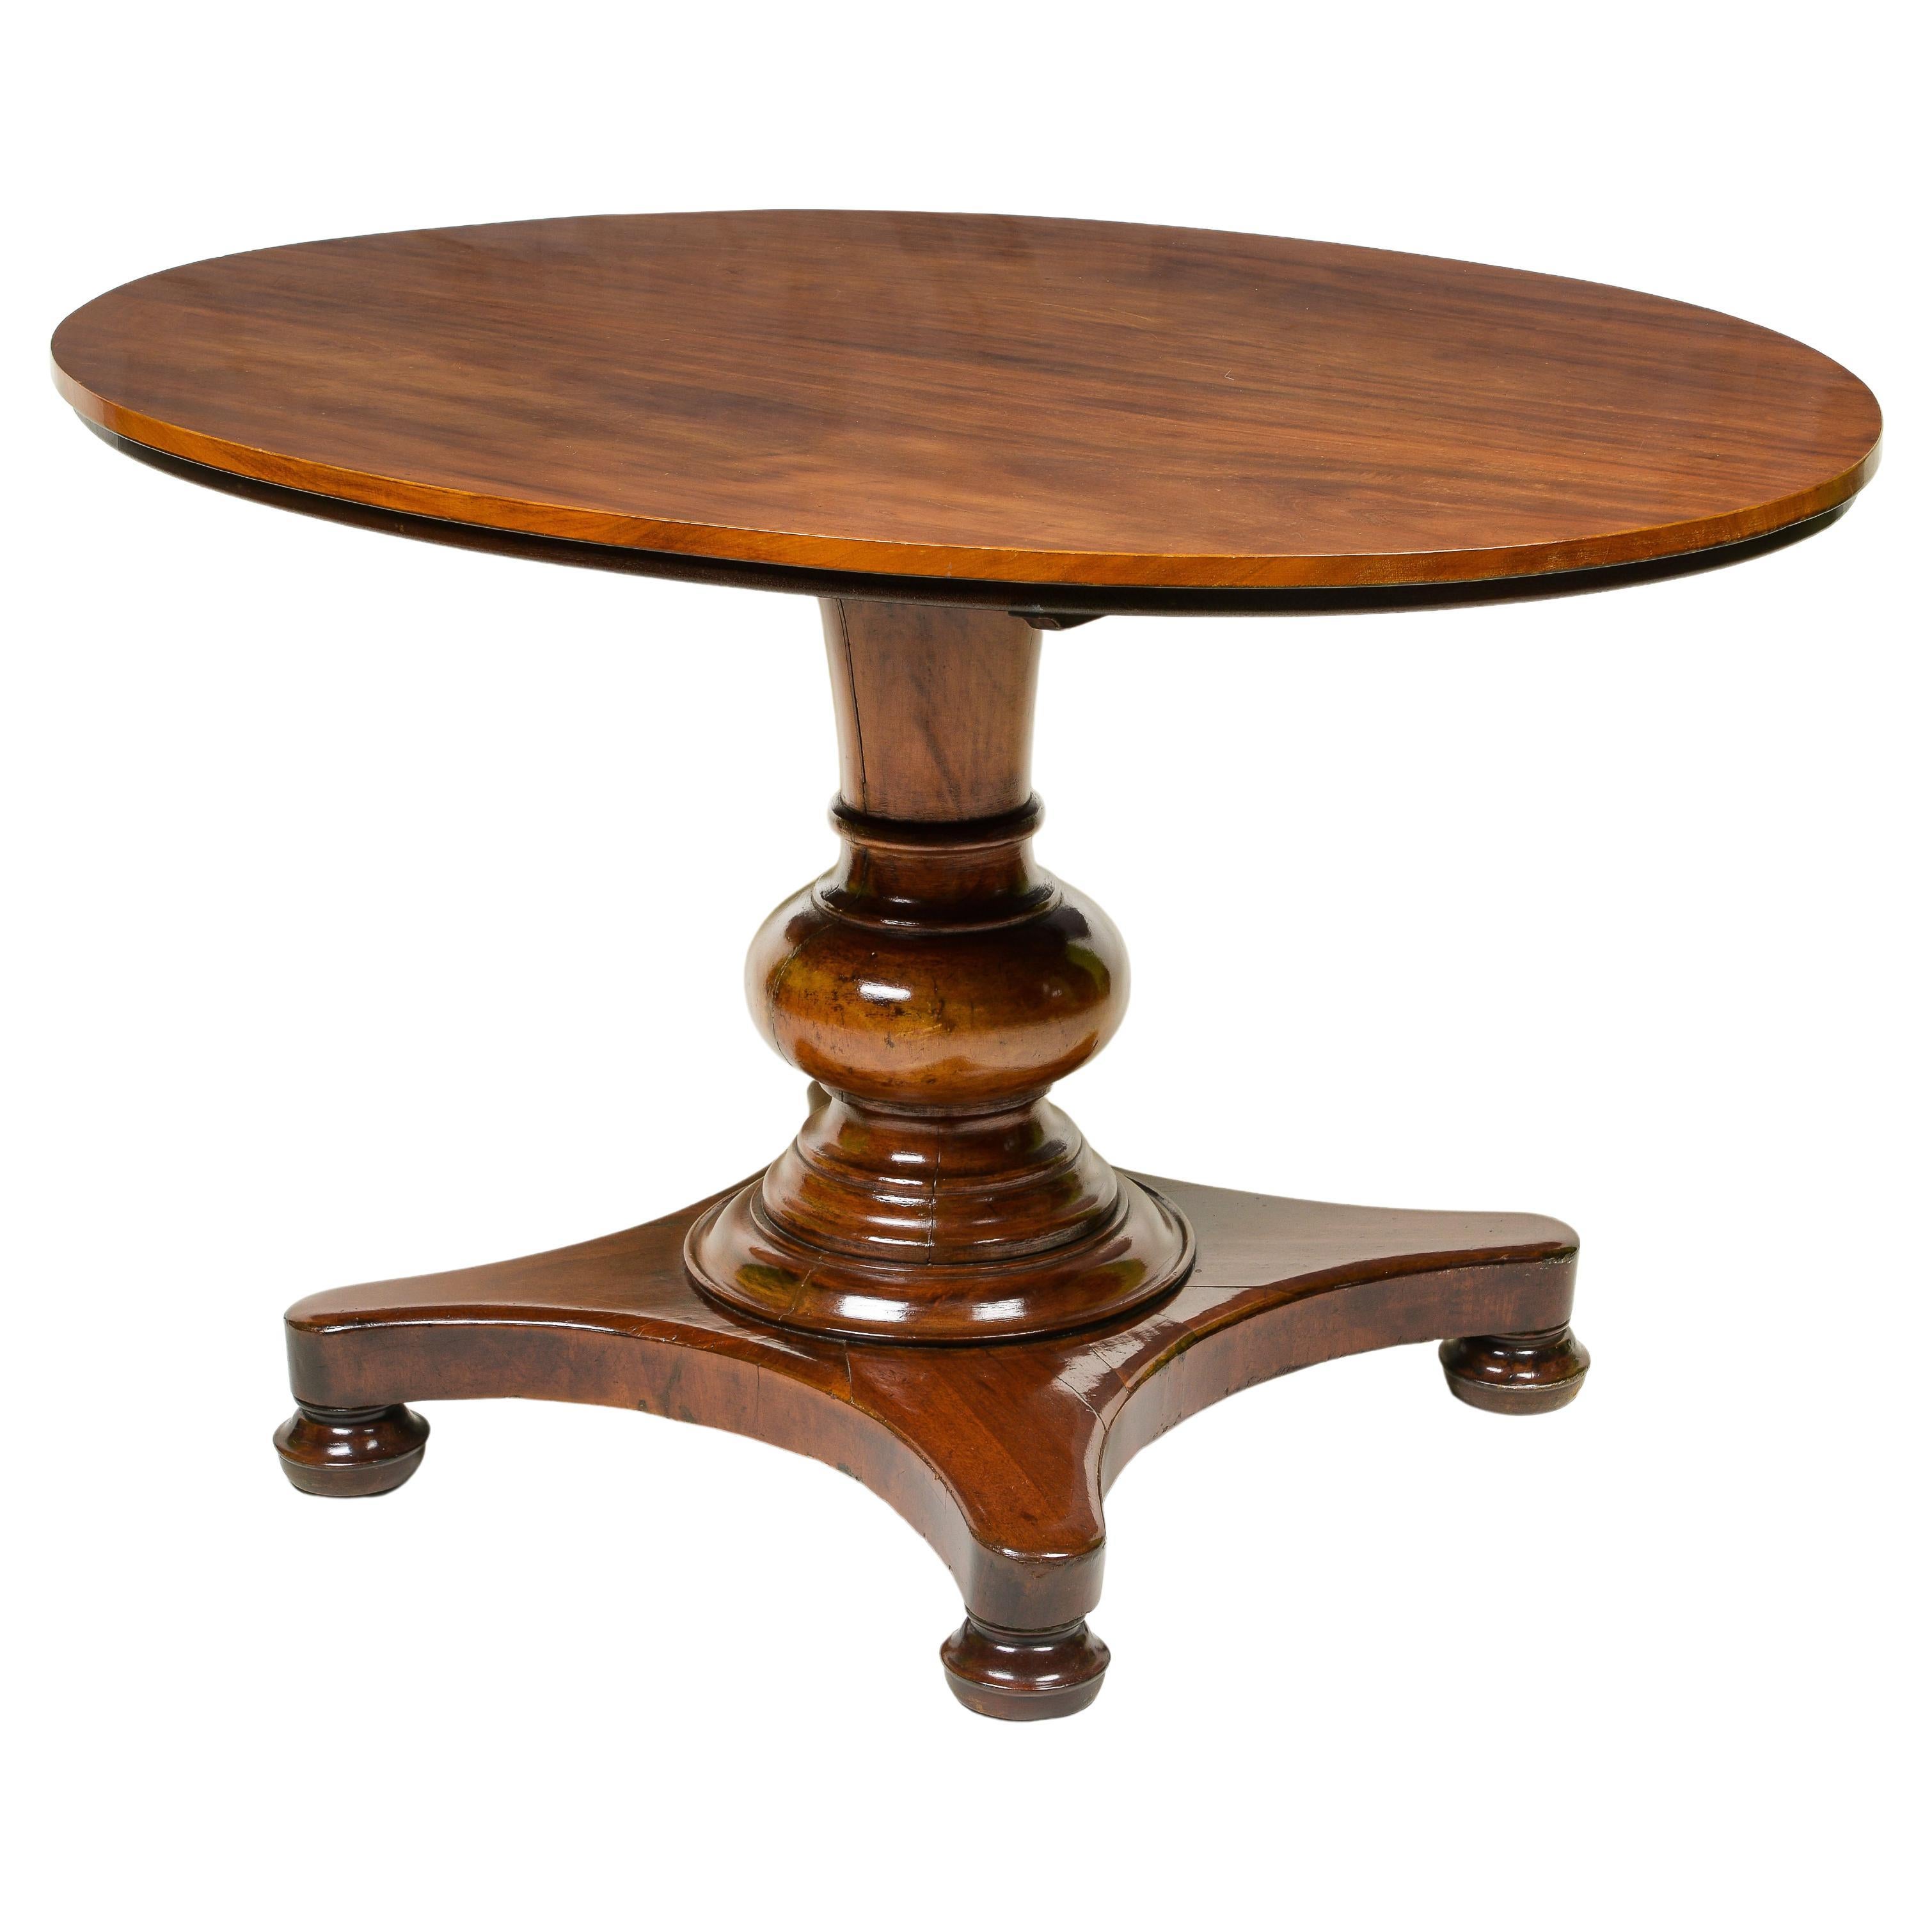 A Continental Mahogany Oval Center Table